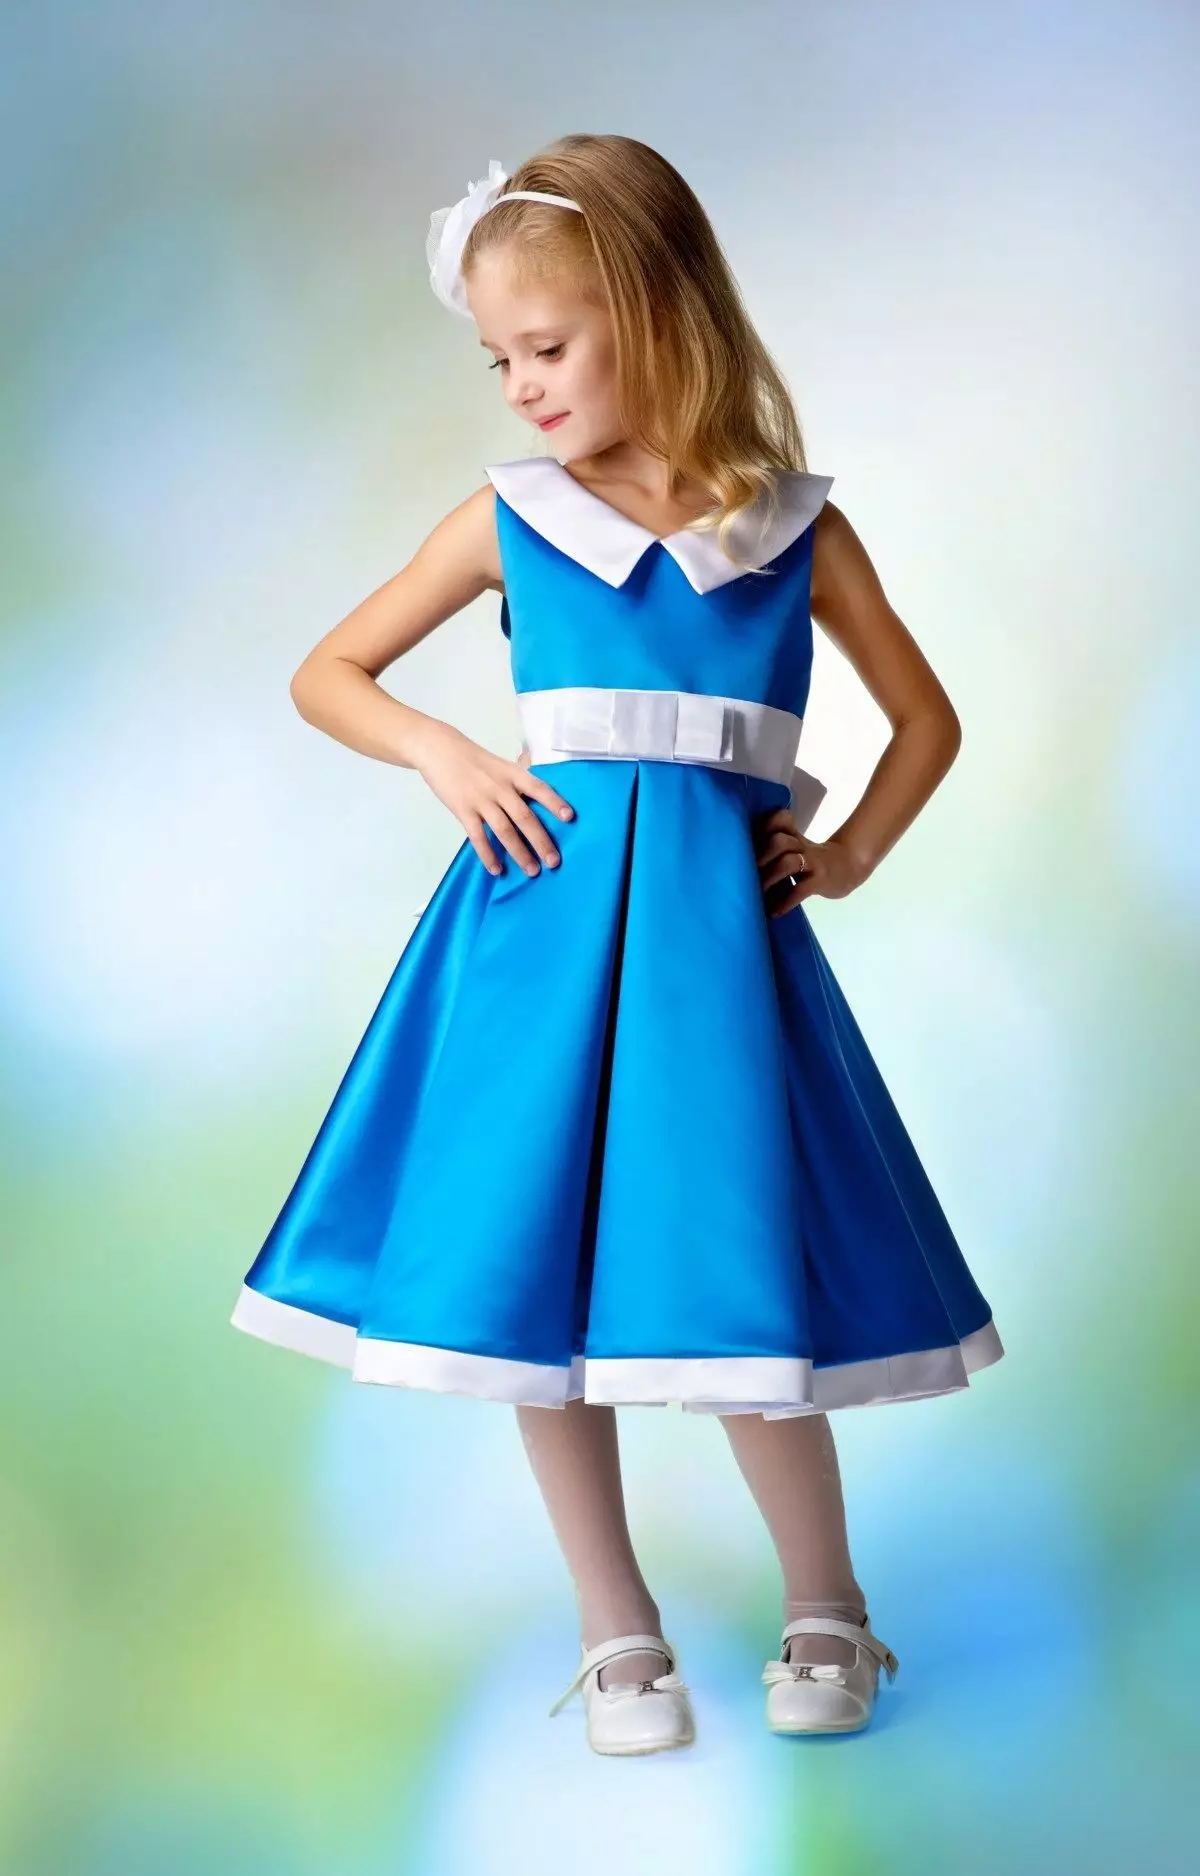 فستان التخرج في رياض الأطفال الأزرق